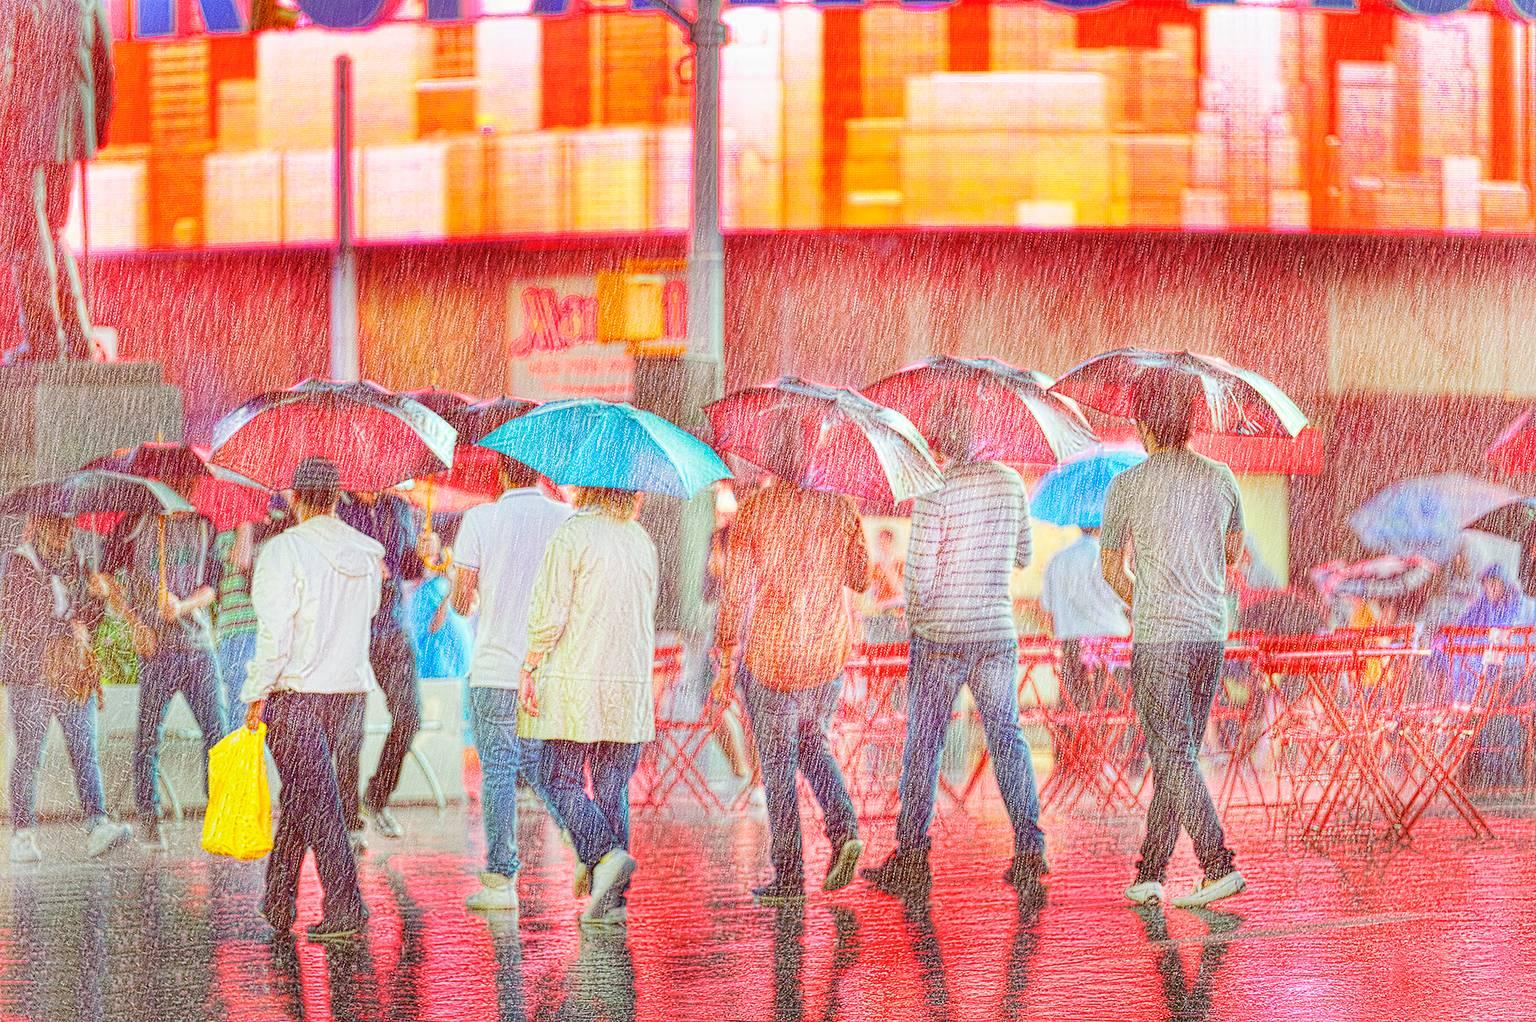 Times Square sous la pluie